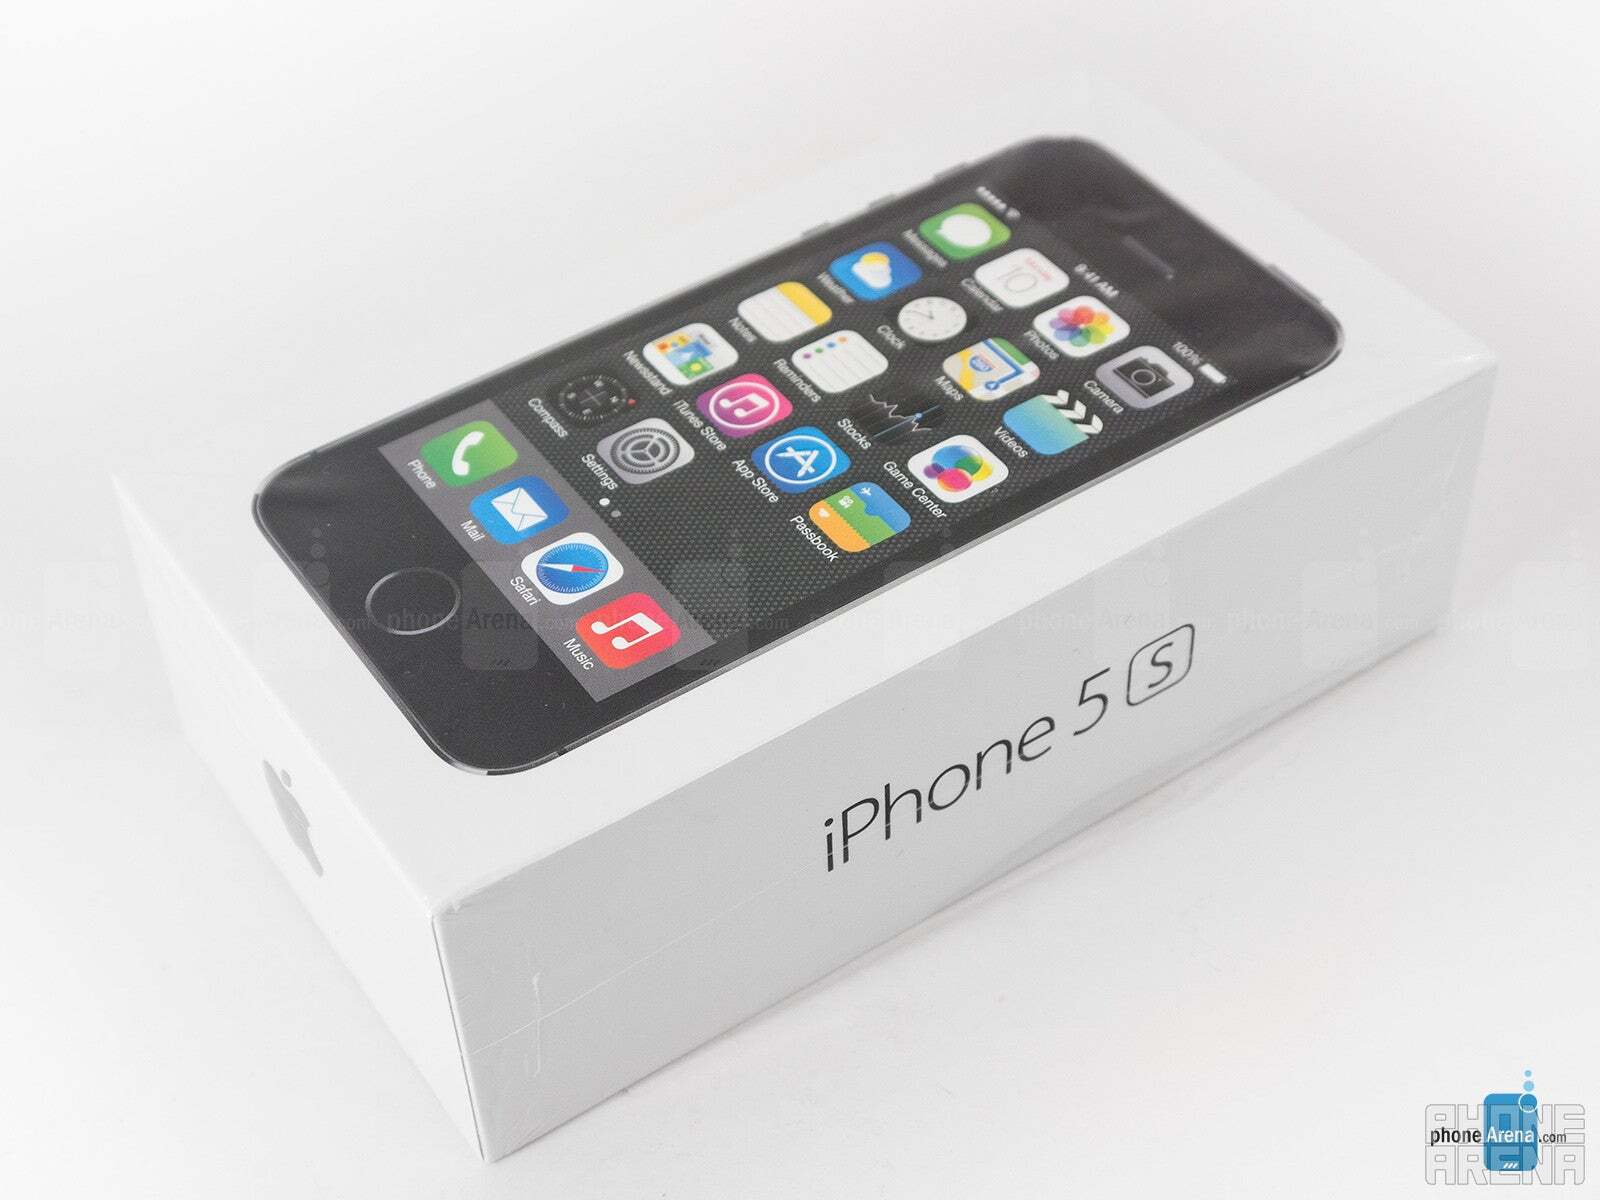 iPhone 5'lerin artık resmi olarak modası geçmiş - Apple, bu iPhone modelinin resmi olarak eskidiğini söylüyor